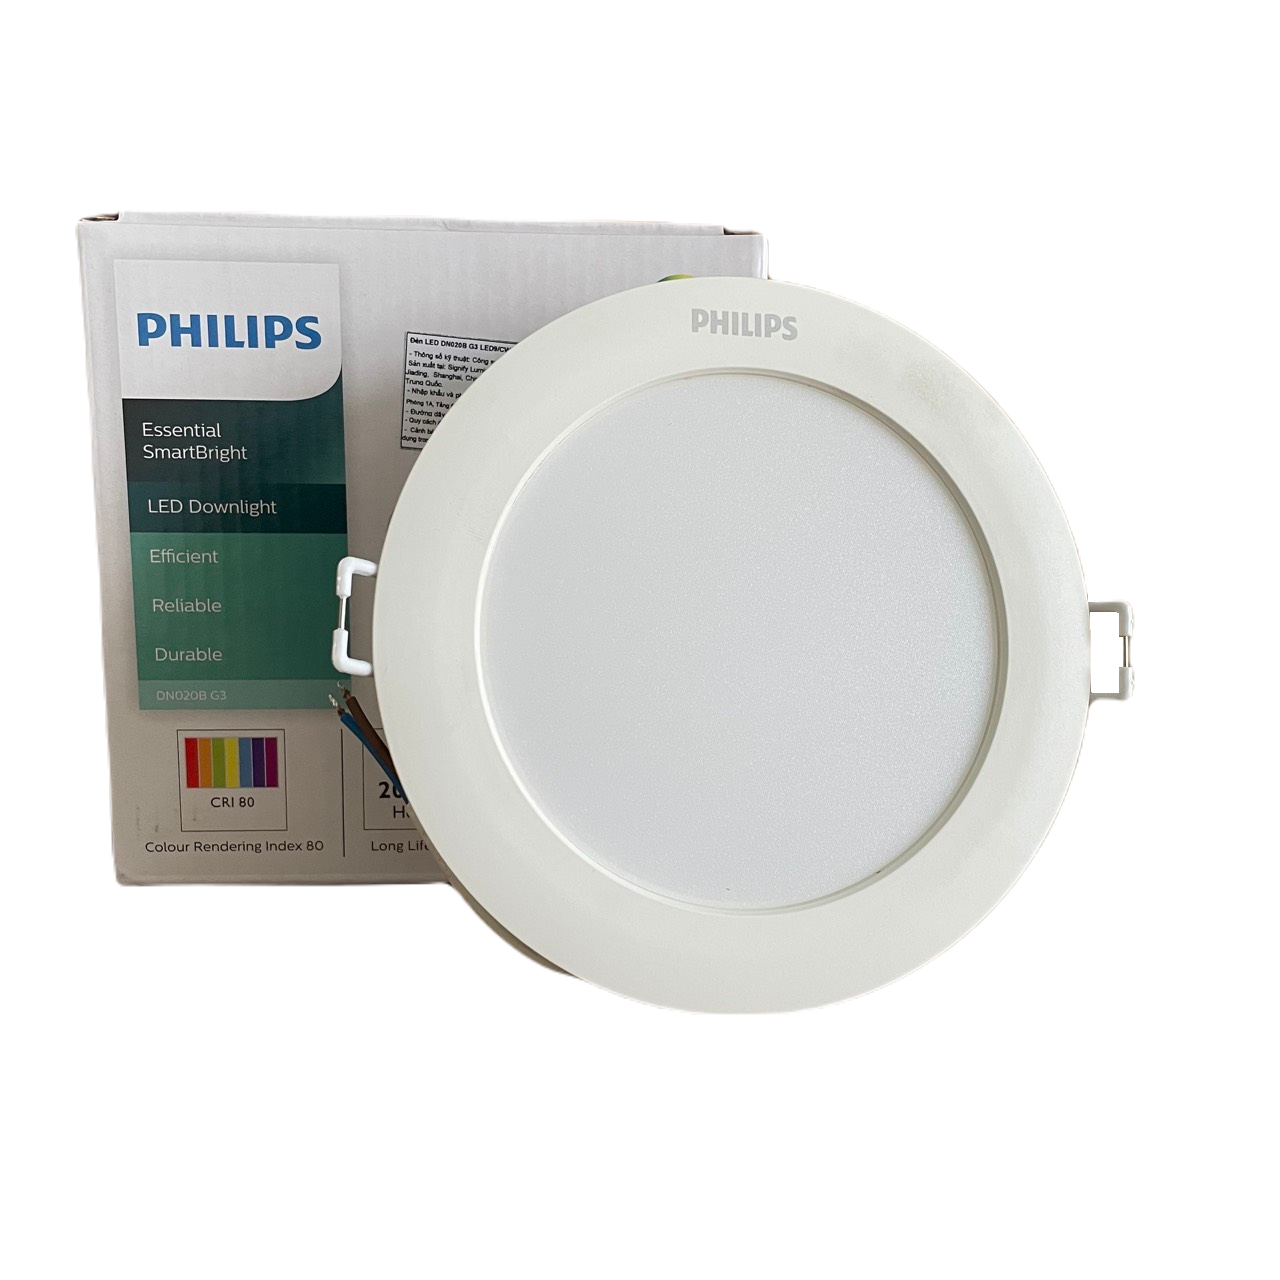 Đèn downlight âm trần LED Philips Essential SmartBright DN020B G3 LED15/CW 18W 220-240V D175 GM